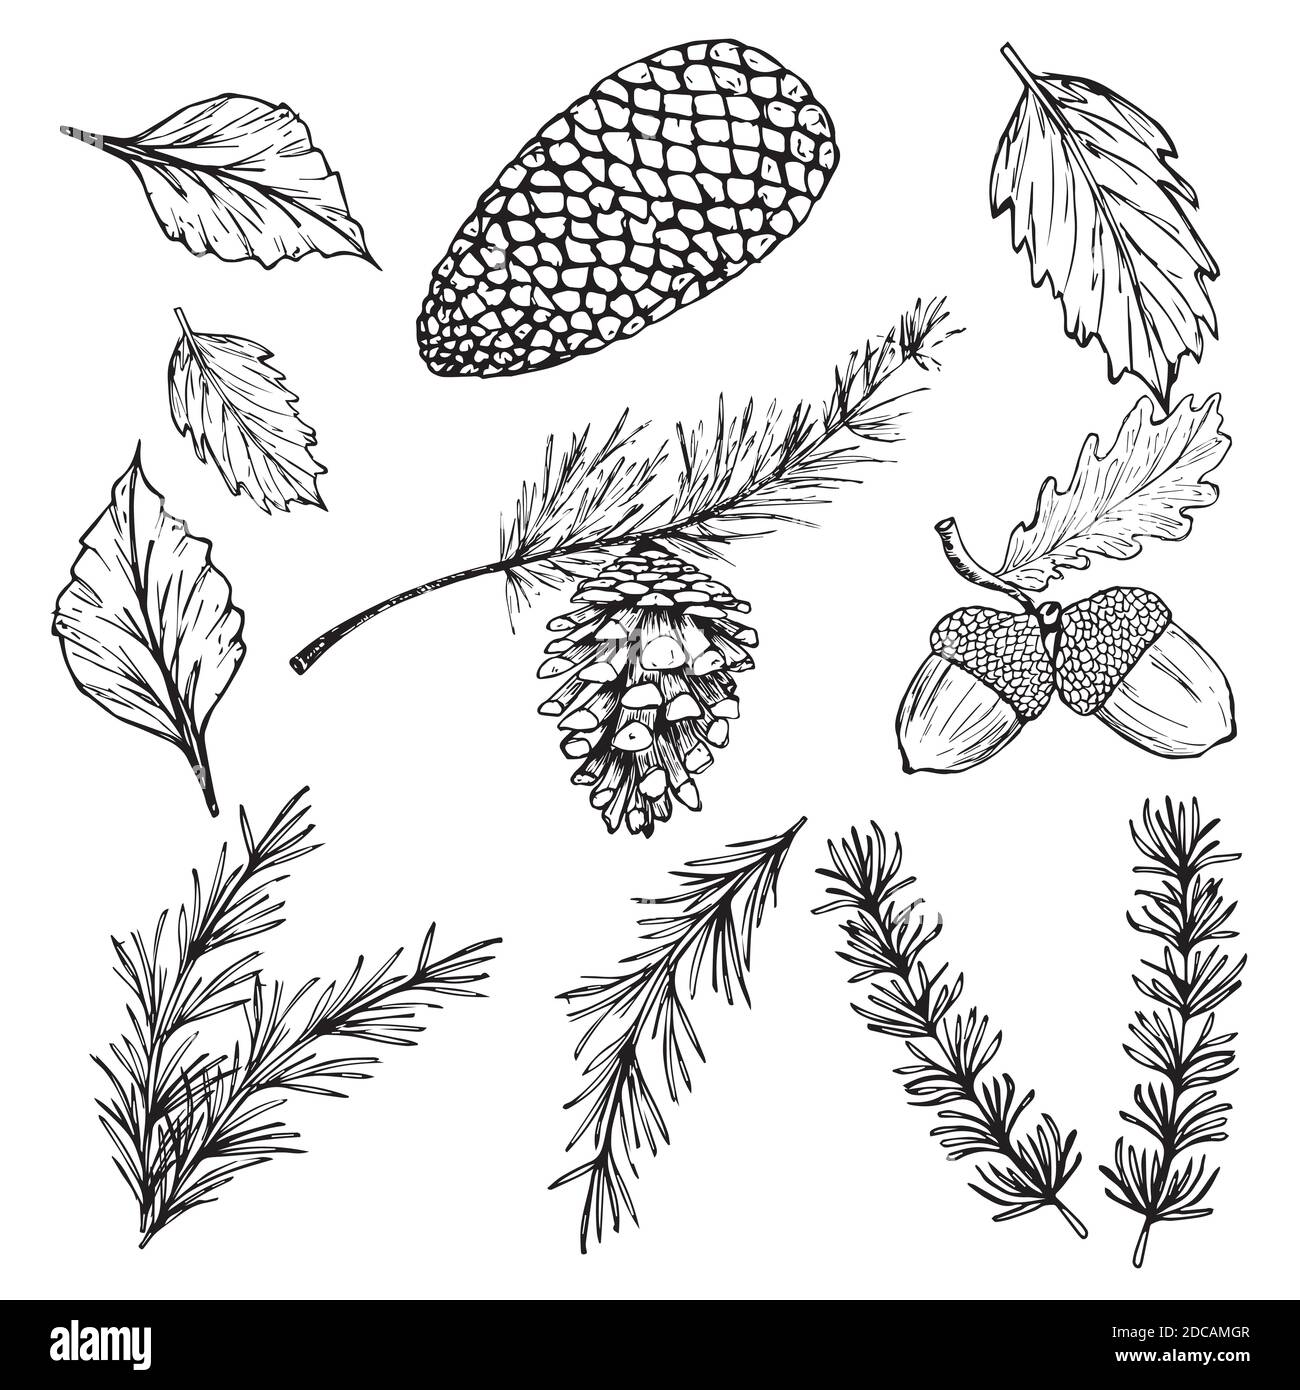 Illustrazioni vettoriali disegnate a mano - Foresta Autunno Inverno collezione. Rami di abete rosso, ghiande, coni di pino, foglie di caduta. Illustrazione Vettoriale